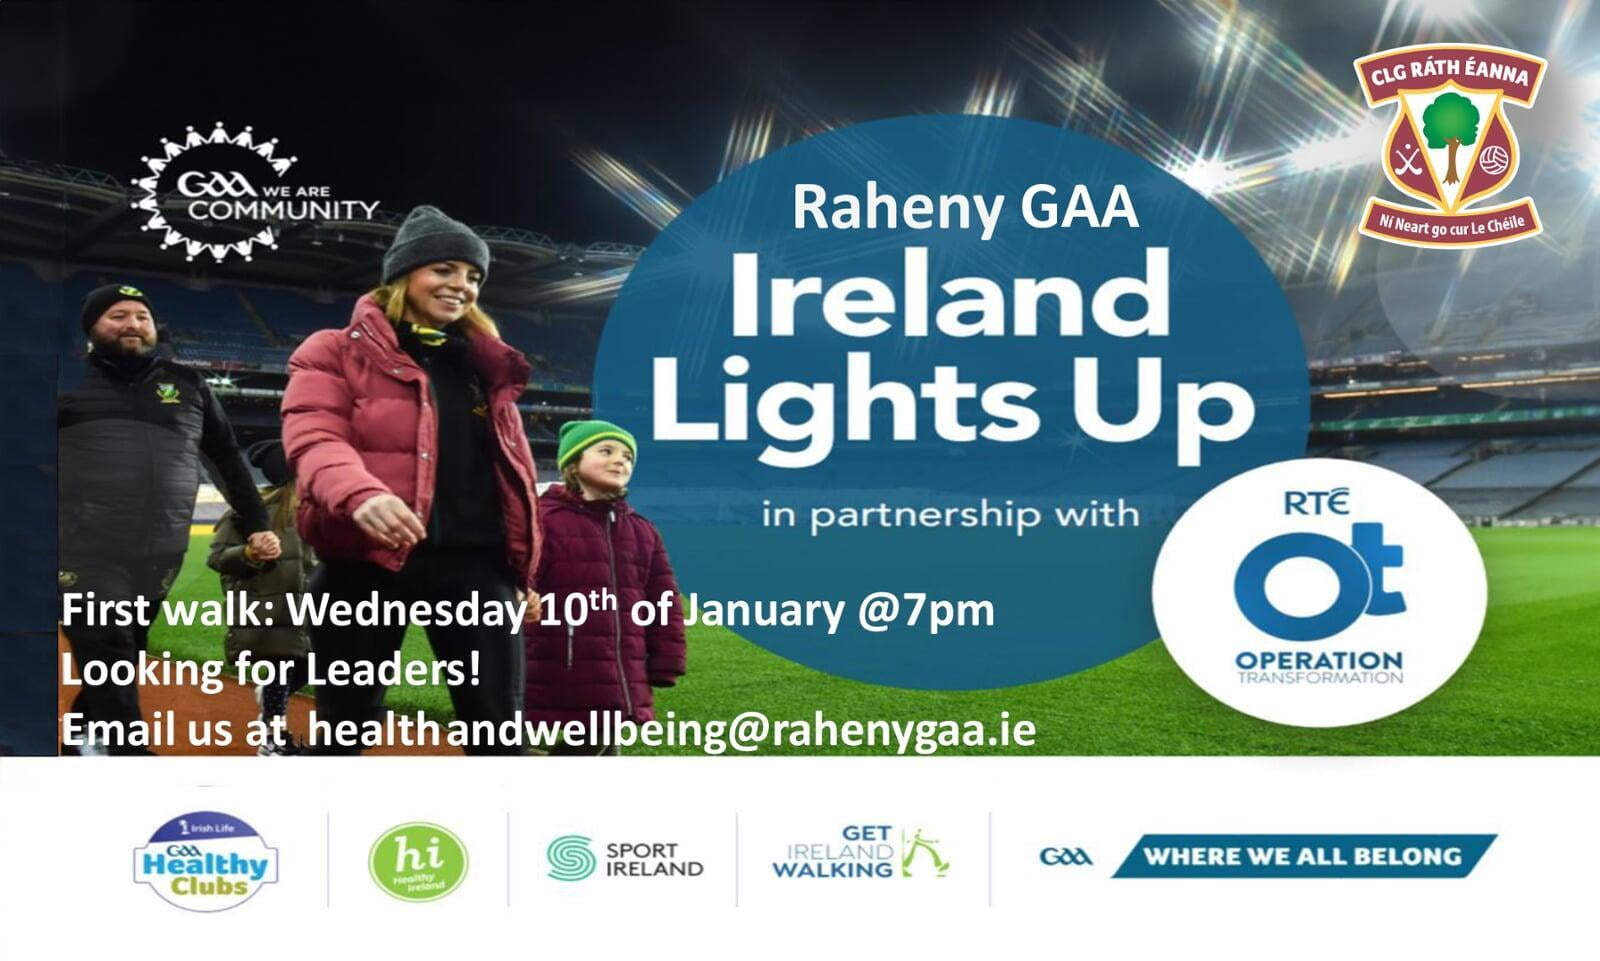 Raheny GAA and Ireland Lights Up